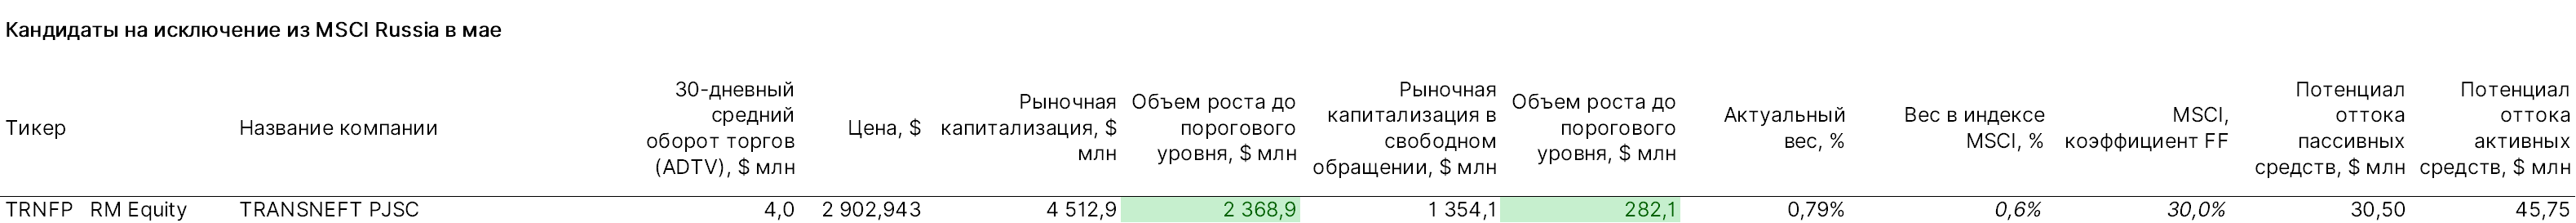 MSCI Russia май